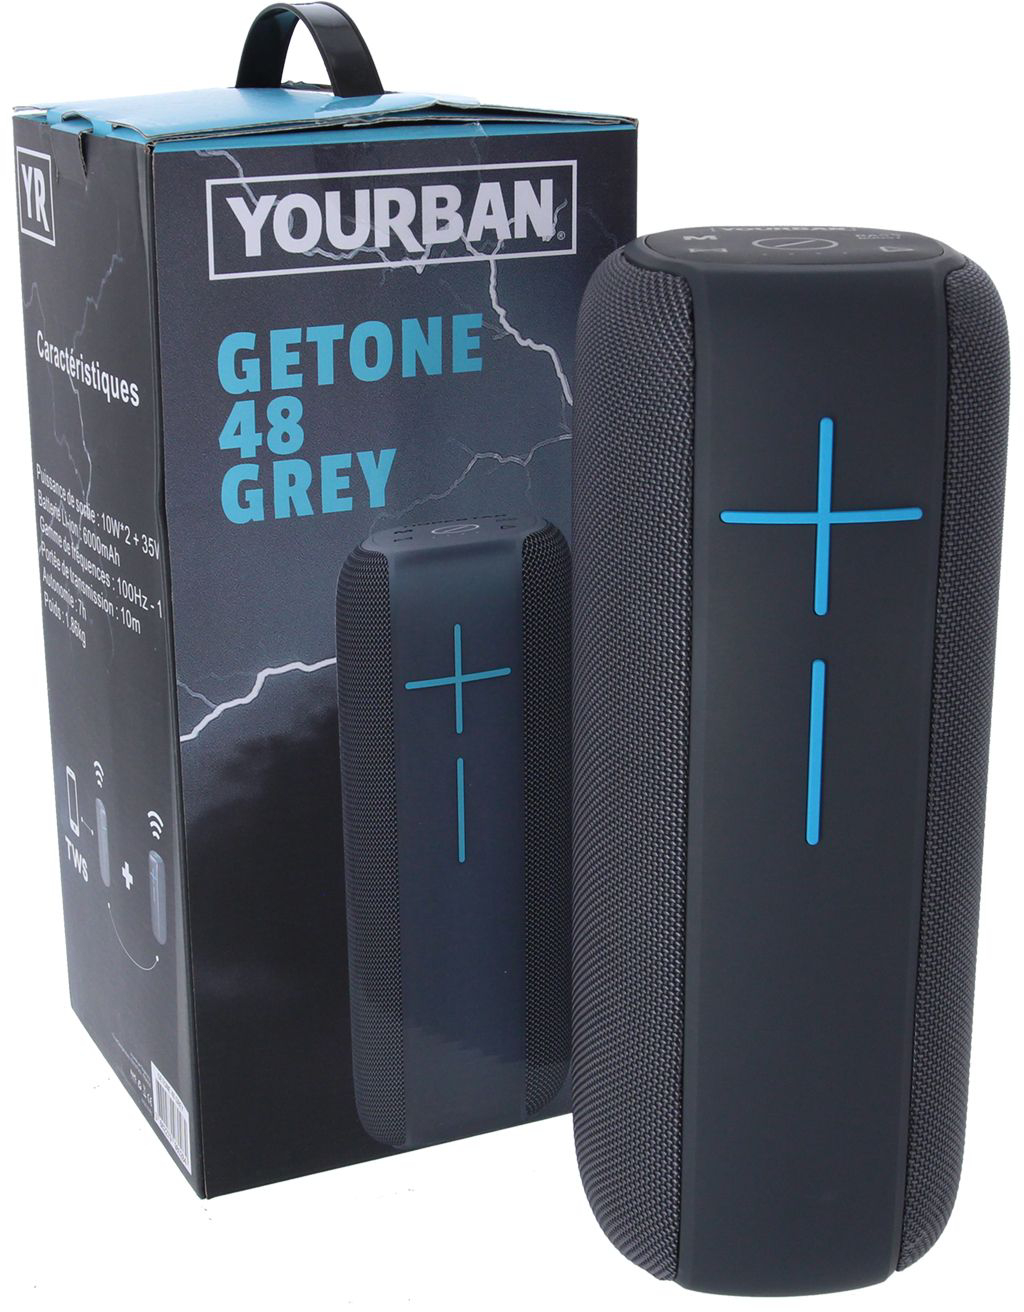 Yourban Getone 48 Grey - Sono Portable - Variation 5